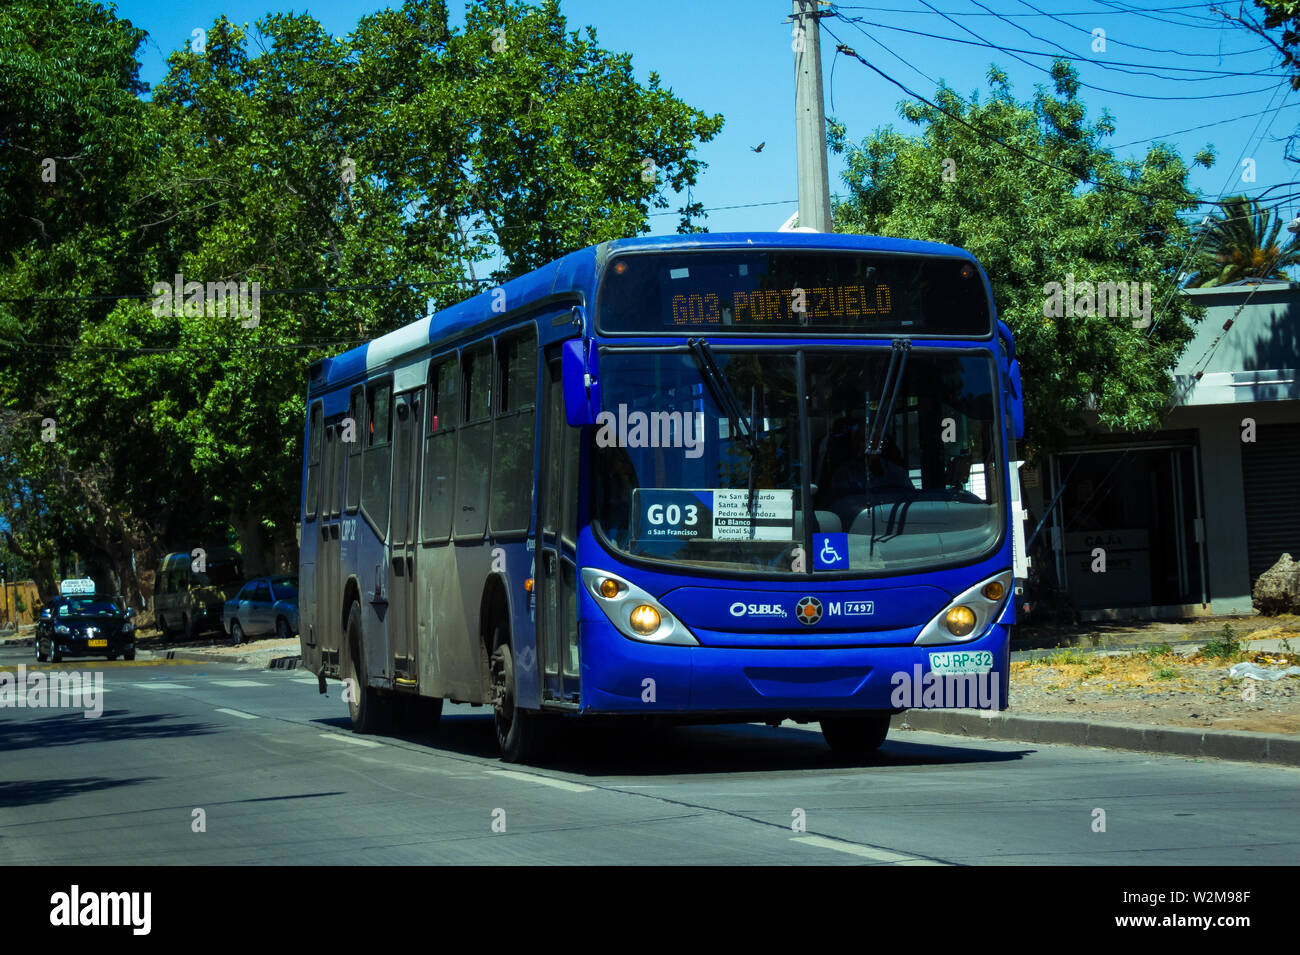 SANTIAGO, CHILE - DECEMBER 2014: A blue Transantiago bus in San Bernardo Stock Photo